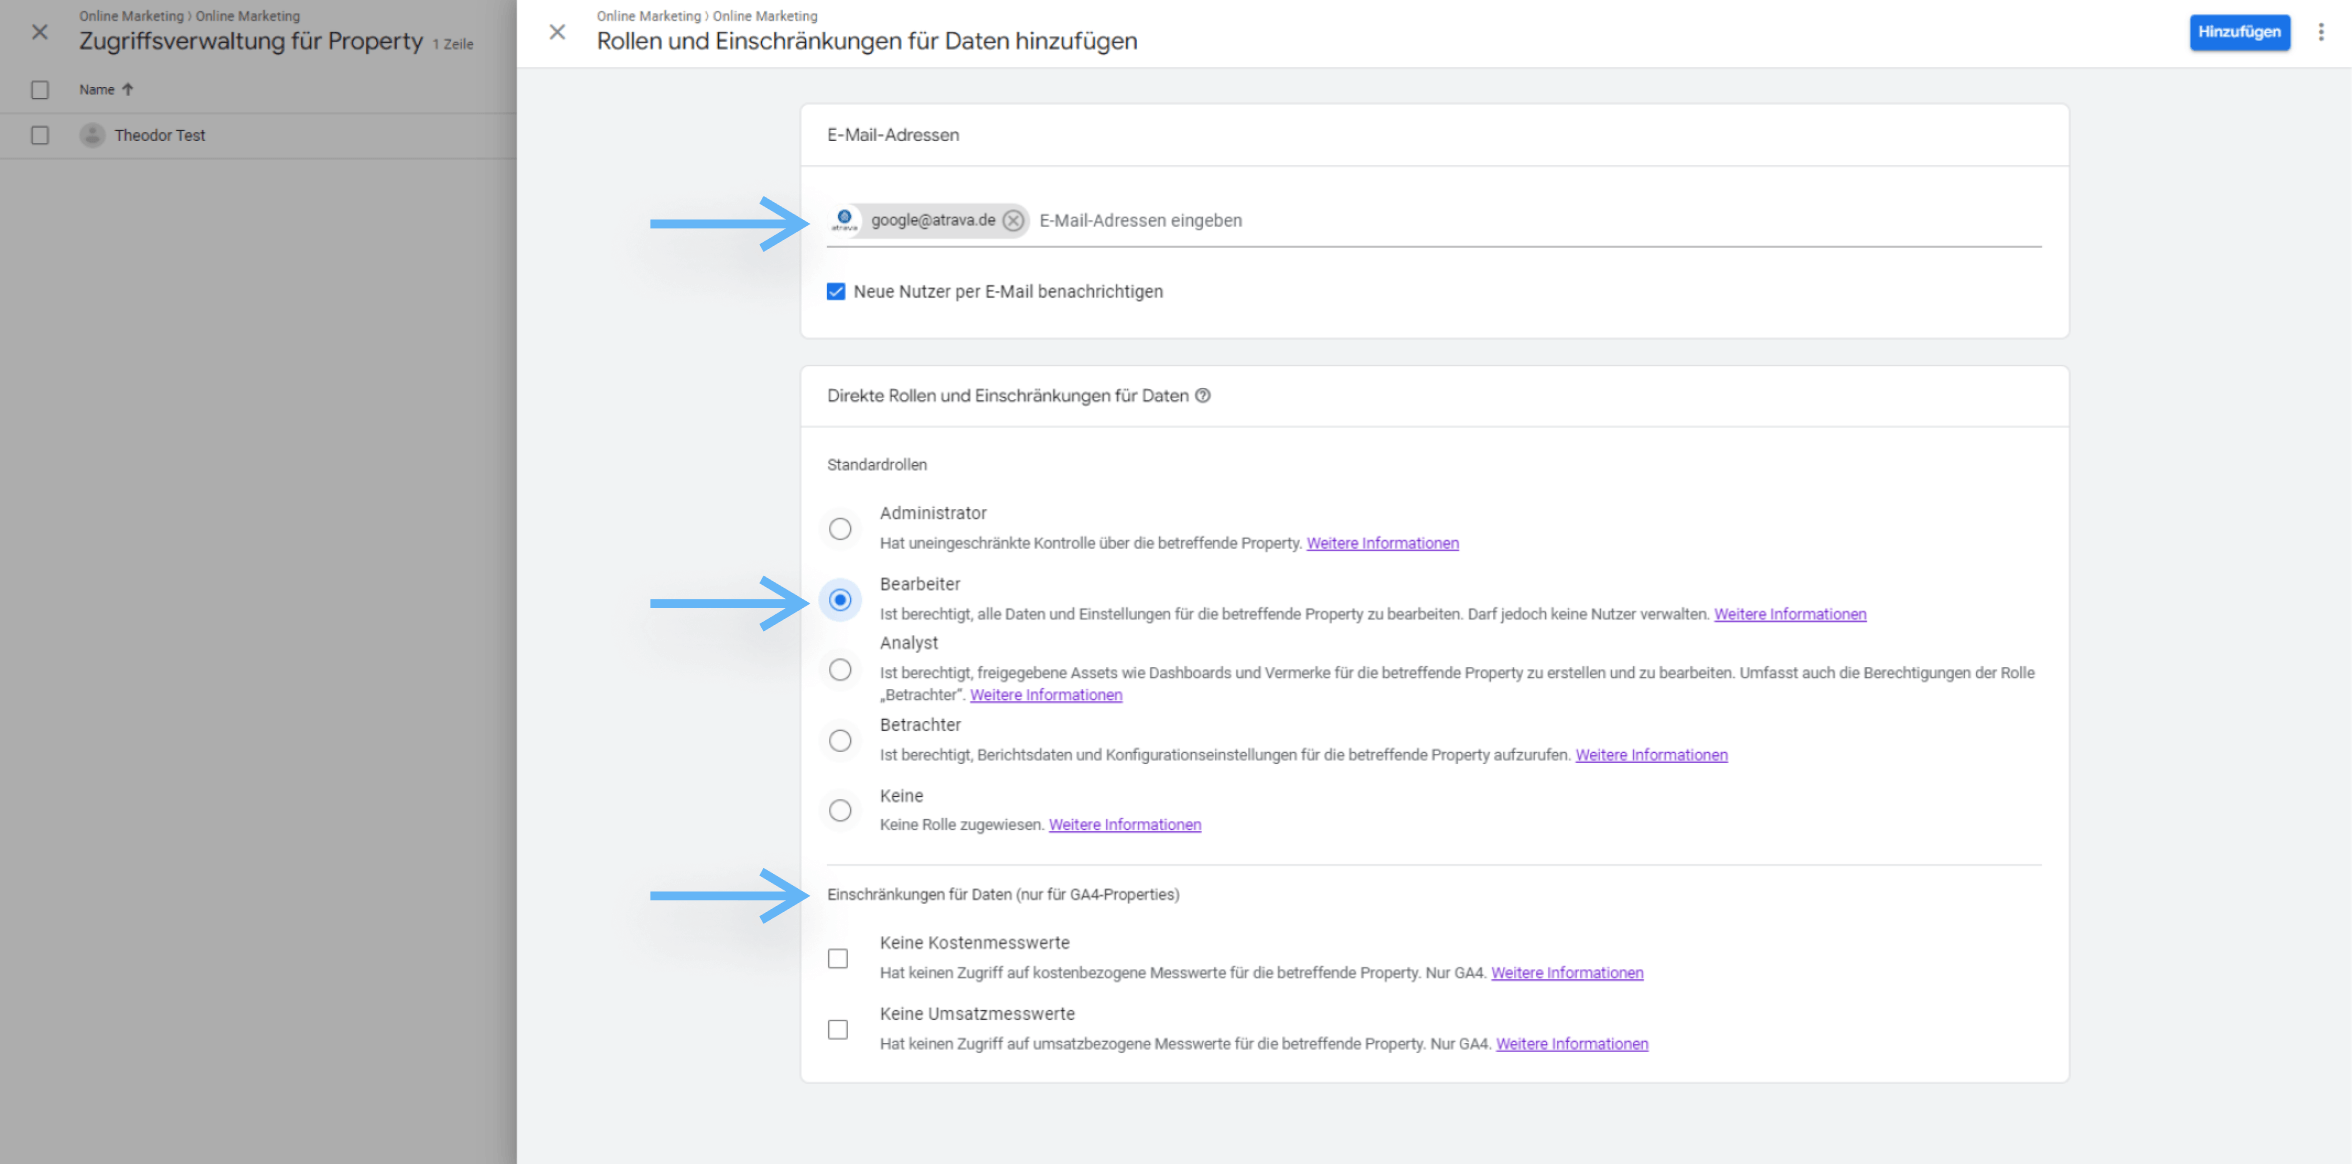 atrava - Nutzer Verwalten in Google Analytics 4 Anleitung - E-mail Adressen hinzufügen, Berechtingungen und Einschränkungen festlegen